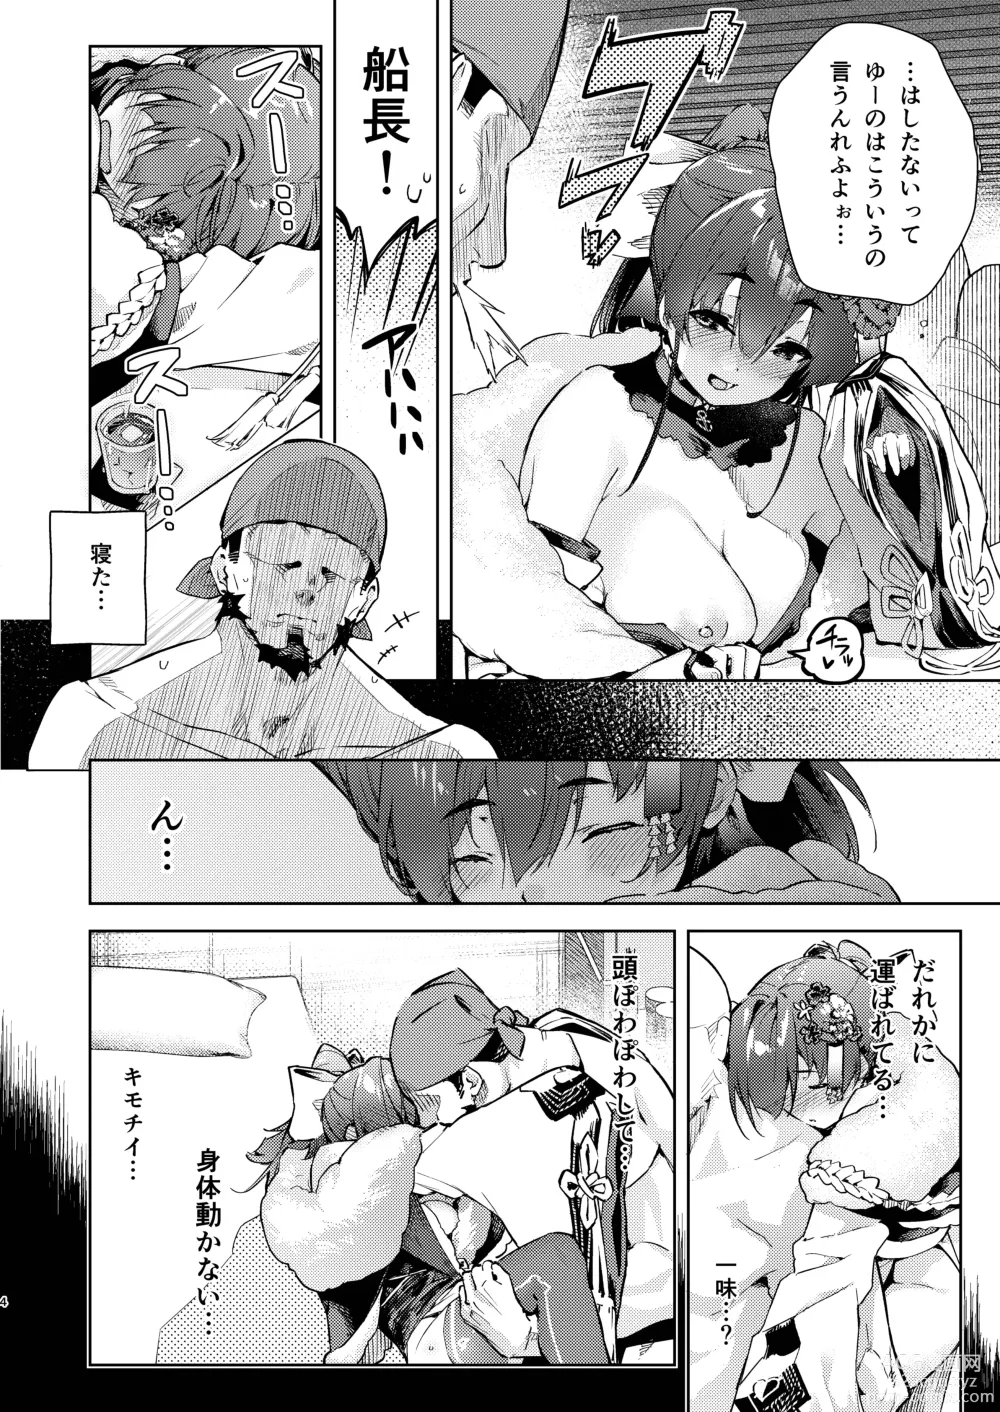 Page 4 of doujinshi Marine Senchou no Yopparai Archive